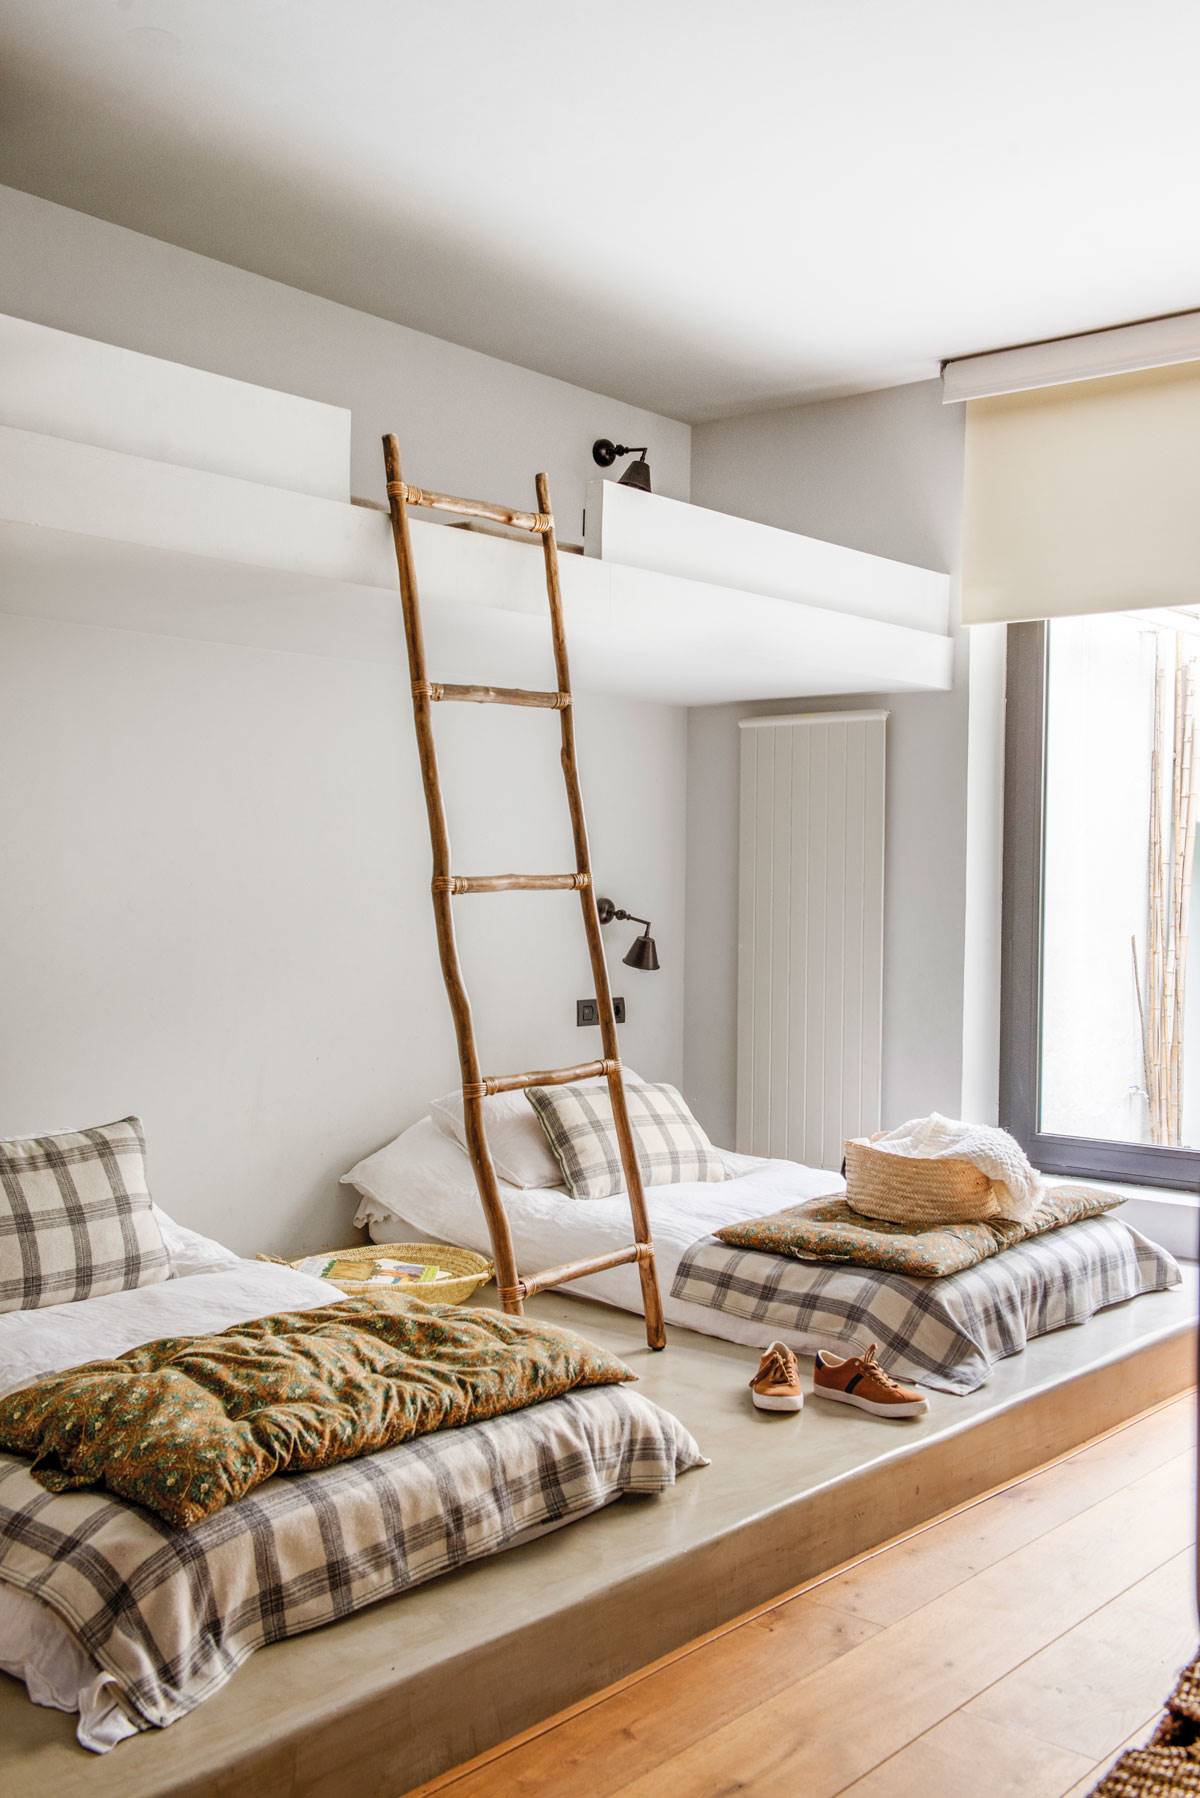 Dormitorio juvenil con camas tipo tatami, litera y escalera de madera.